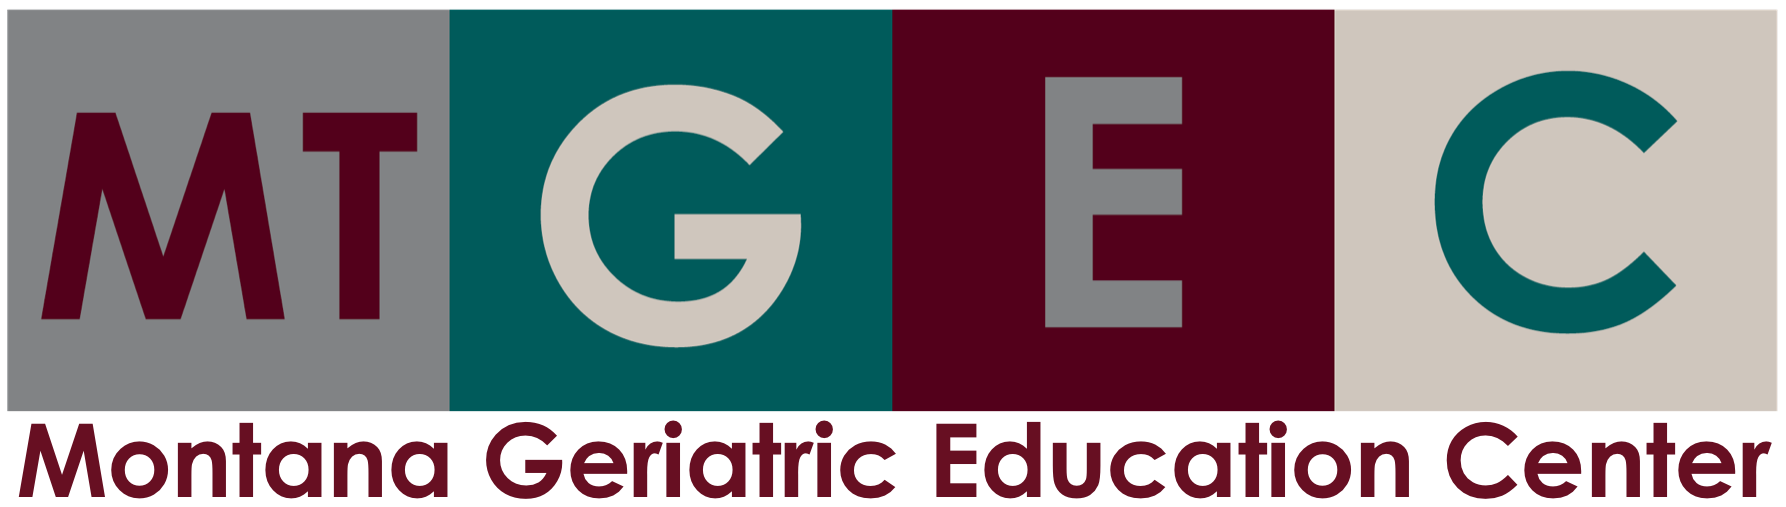 Montana Geriatric Education Center